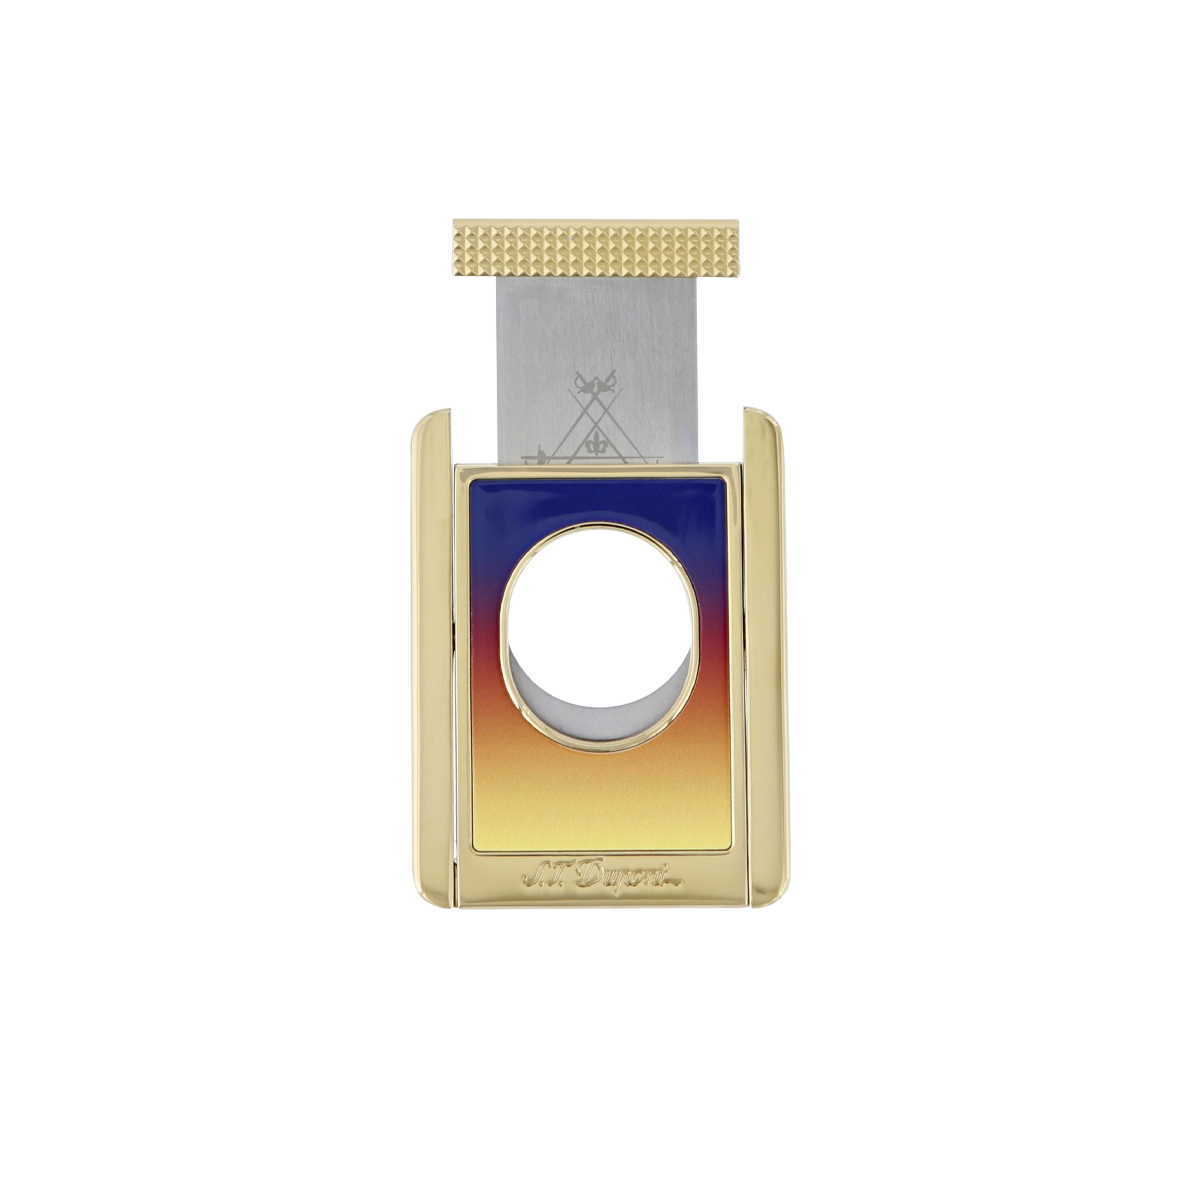 Гильотина для сигар Montecristo 3434 Цвет Золотистый Отделка позолотой и натуральным лаком | S.T. Dupont